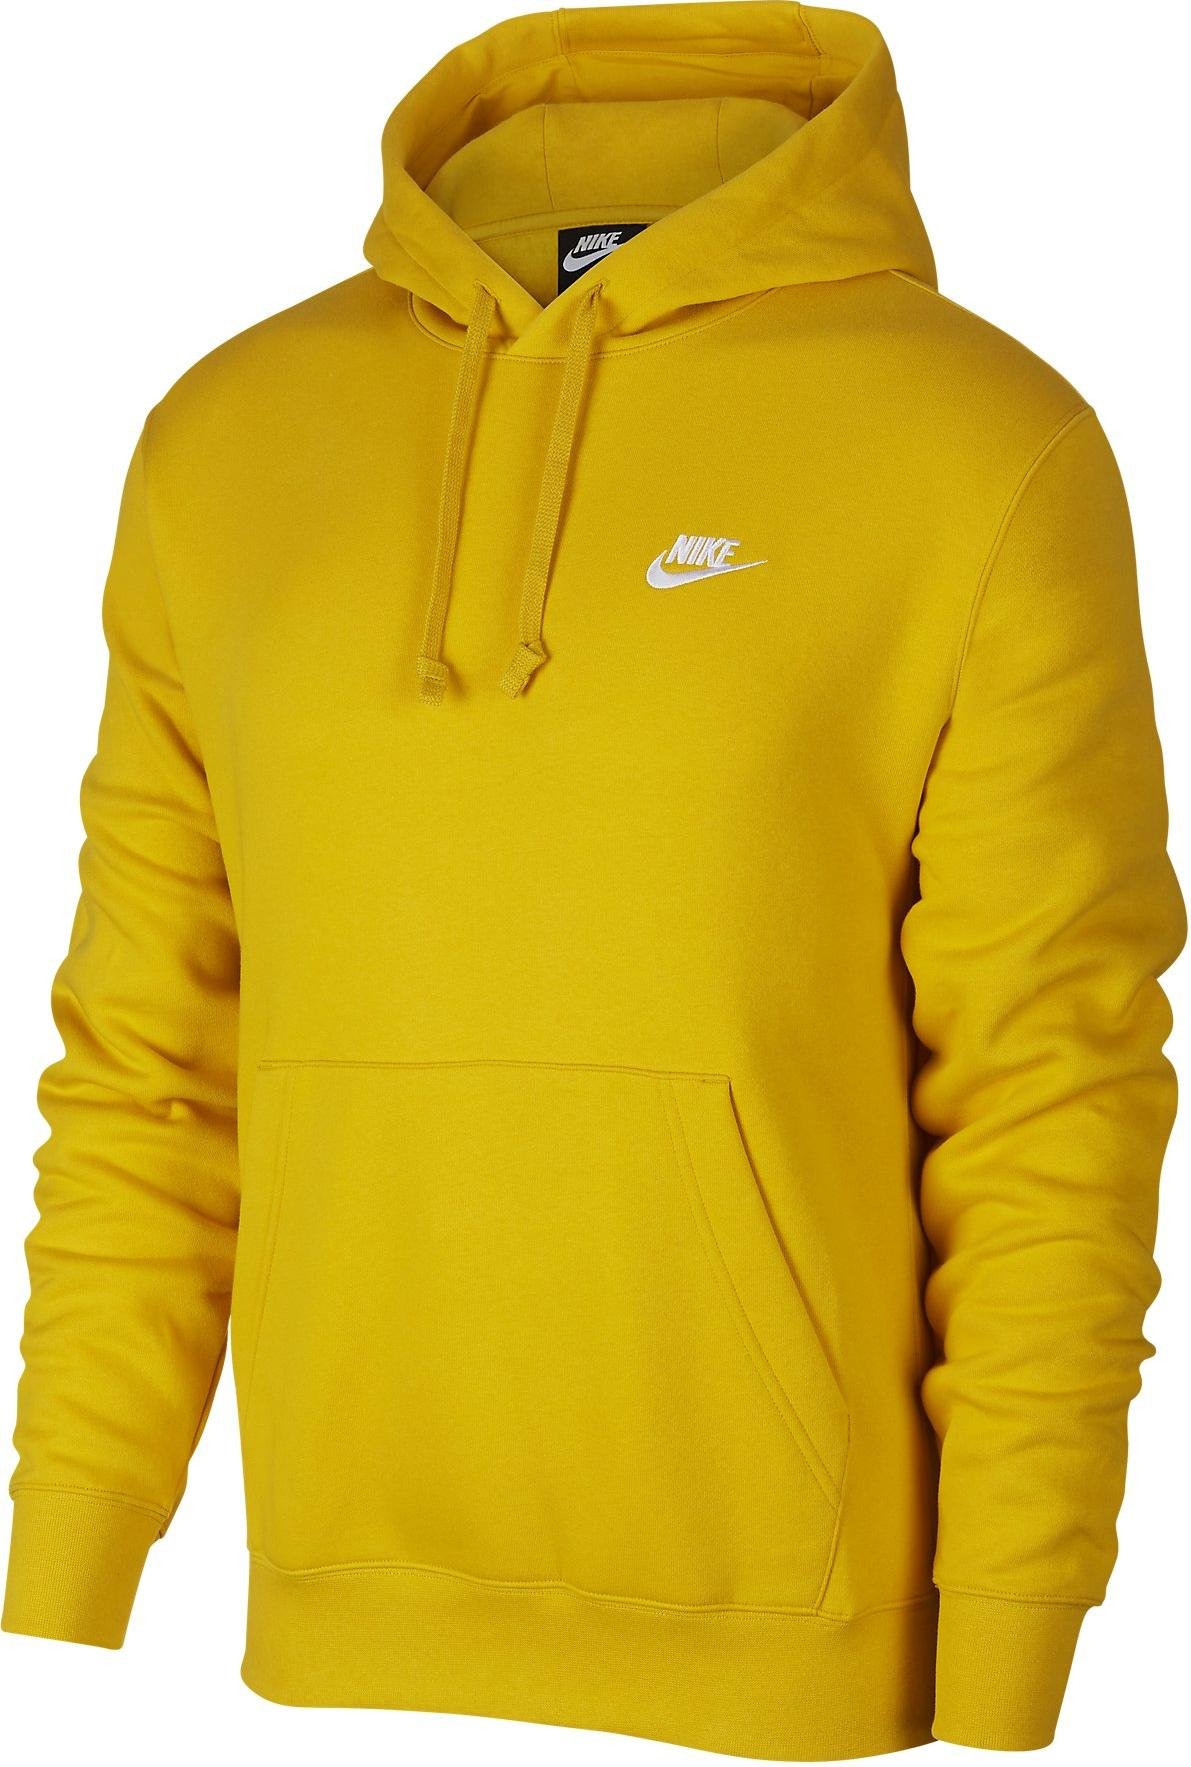 yellow sweatshirt nike